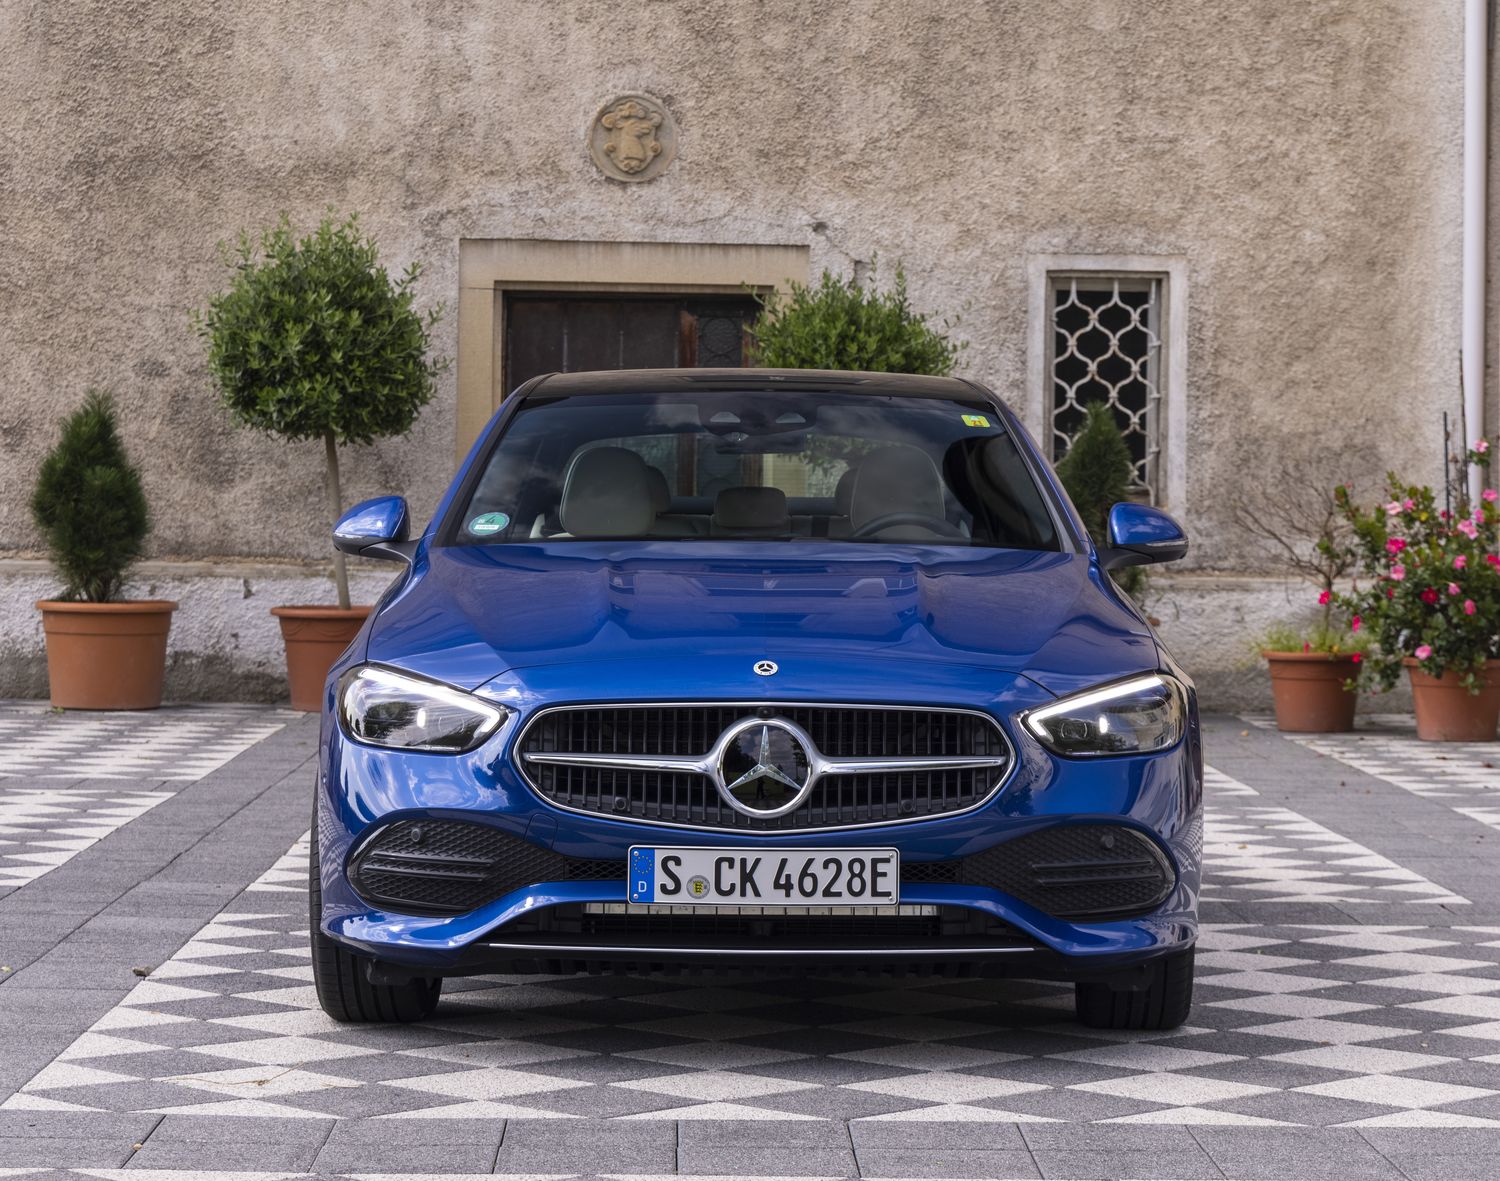 Voitures anciennes : Mercedes-Benz est-elle la nouvelle marque en vue ?